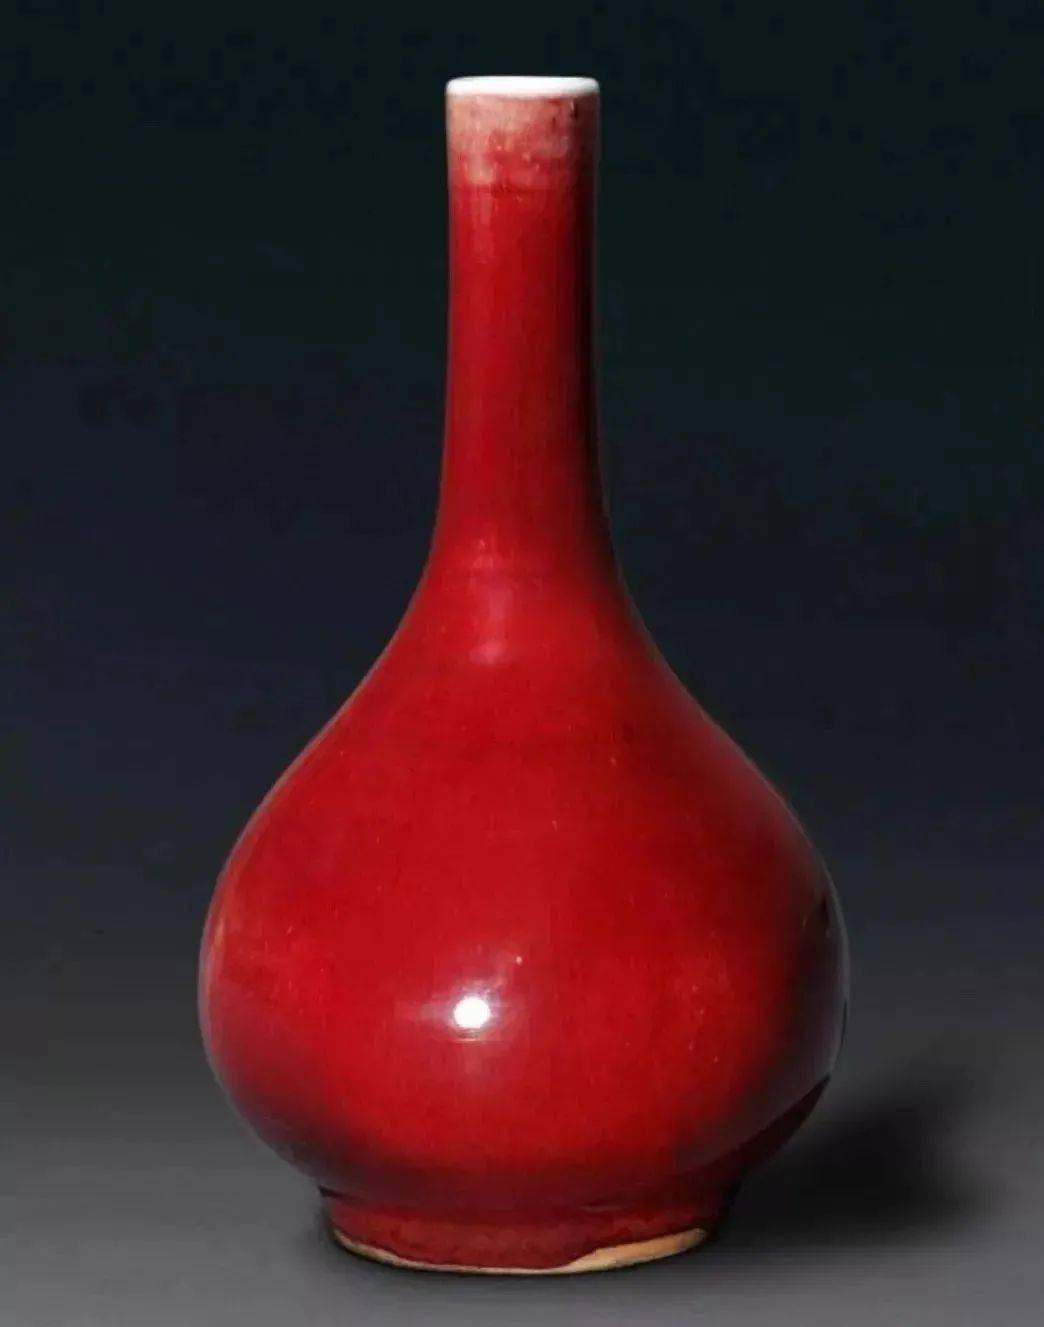 郎窑红,被称为最美的中国红,见识下故宫博物馆藏的清康熙郎红